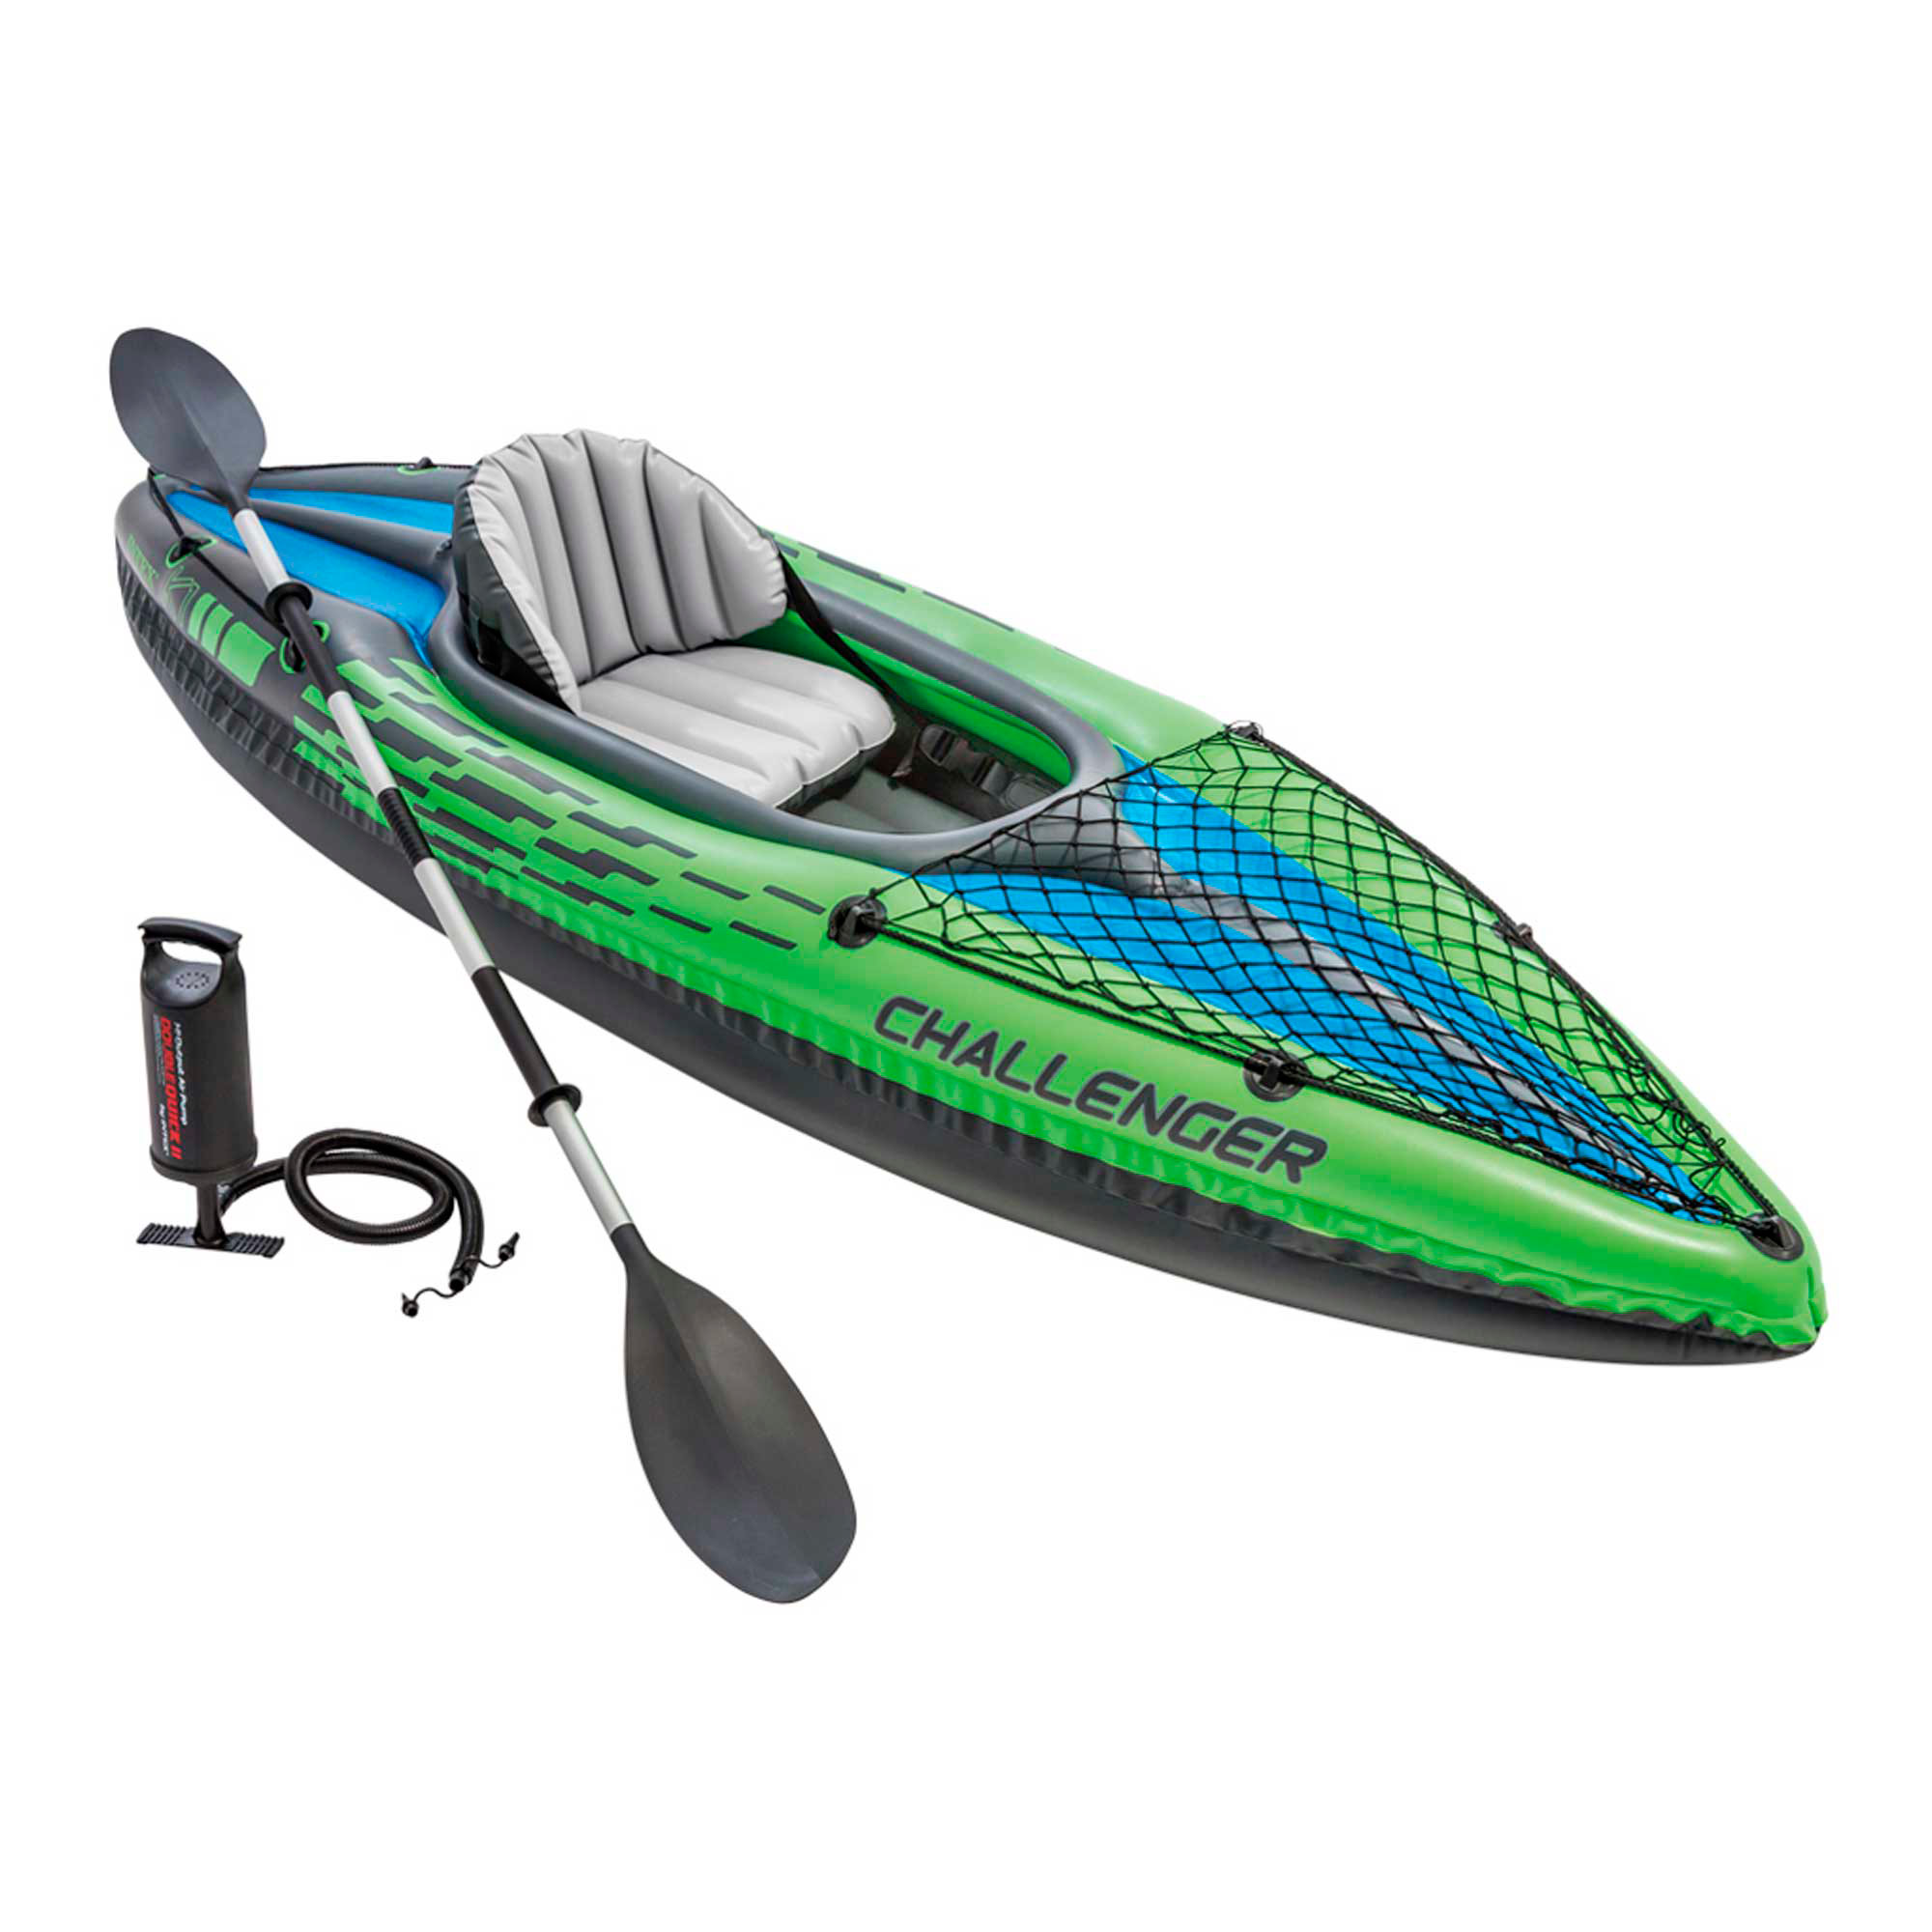 Intex - INTEX - Kayak hinchable Challenger K1 o K2, para 1 o 2 personas, con accesorios, remo e hinchador, asiento, respaldo y suelo hinchables, red de sujeción, red porta objetos, diseño verde y negro, con bolsa transporte, kayaks hinchables